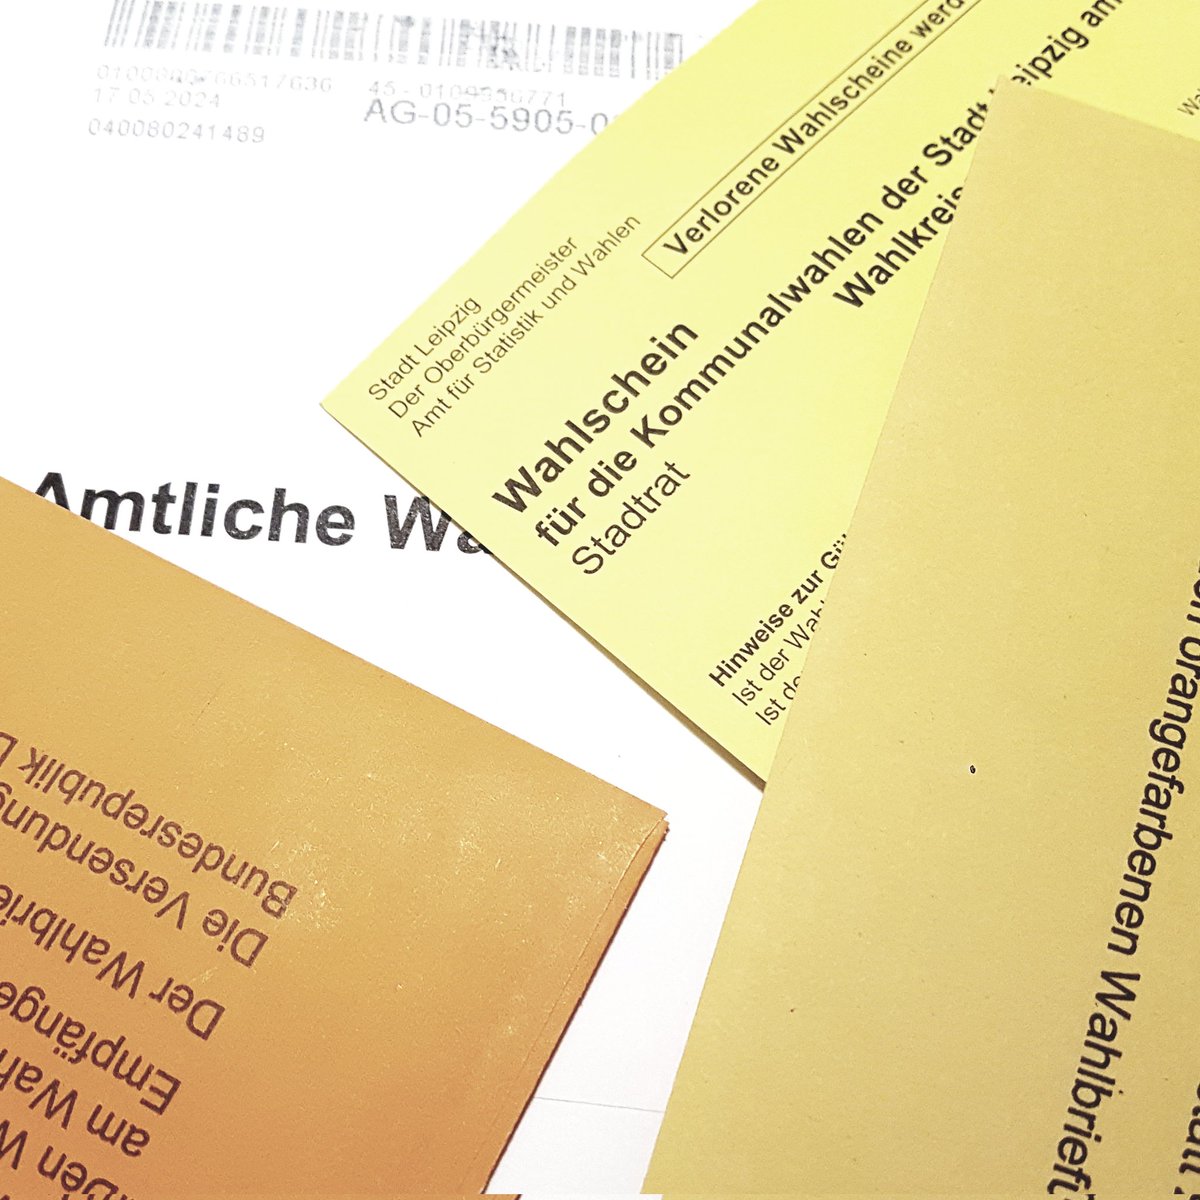 Hallo @StadtLeipzig, in meinen Briefwahlunterlagen fehlt der Stimmzettel für die Kommunalwahlen. #srwle24